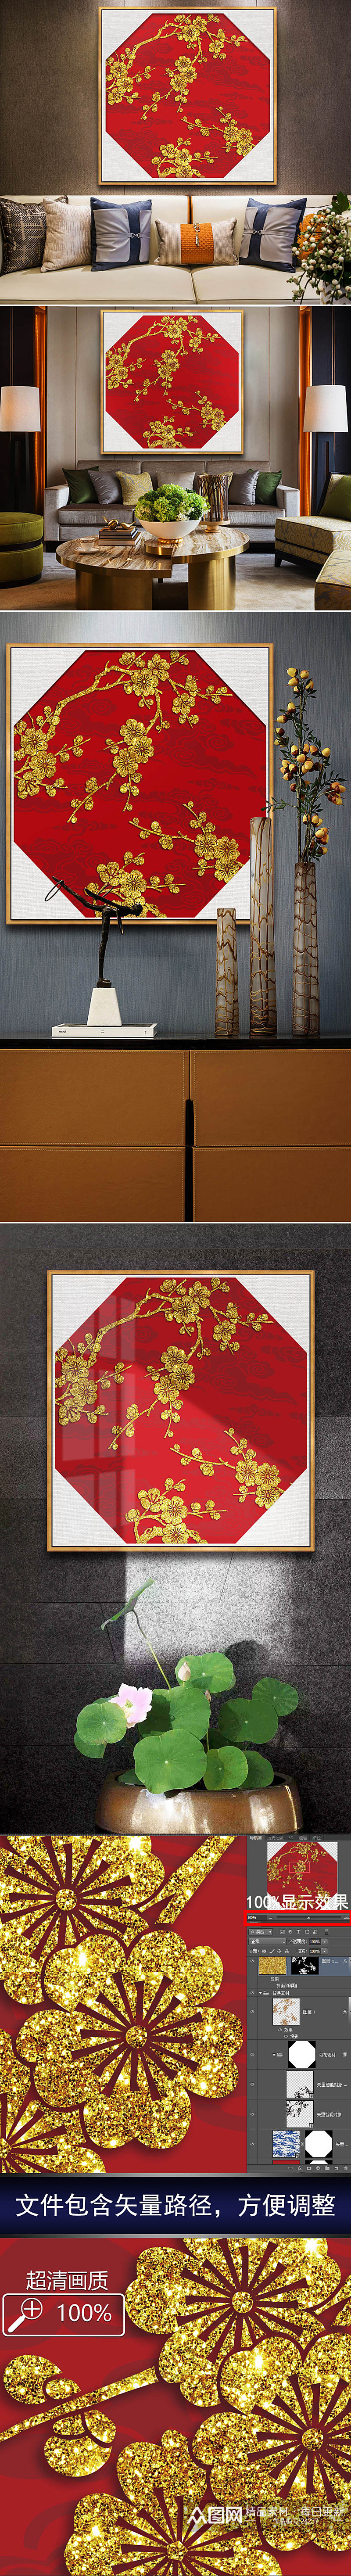 中式梅花剪纸装饰画素材